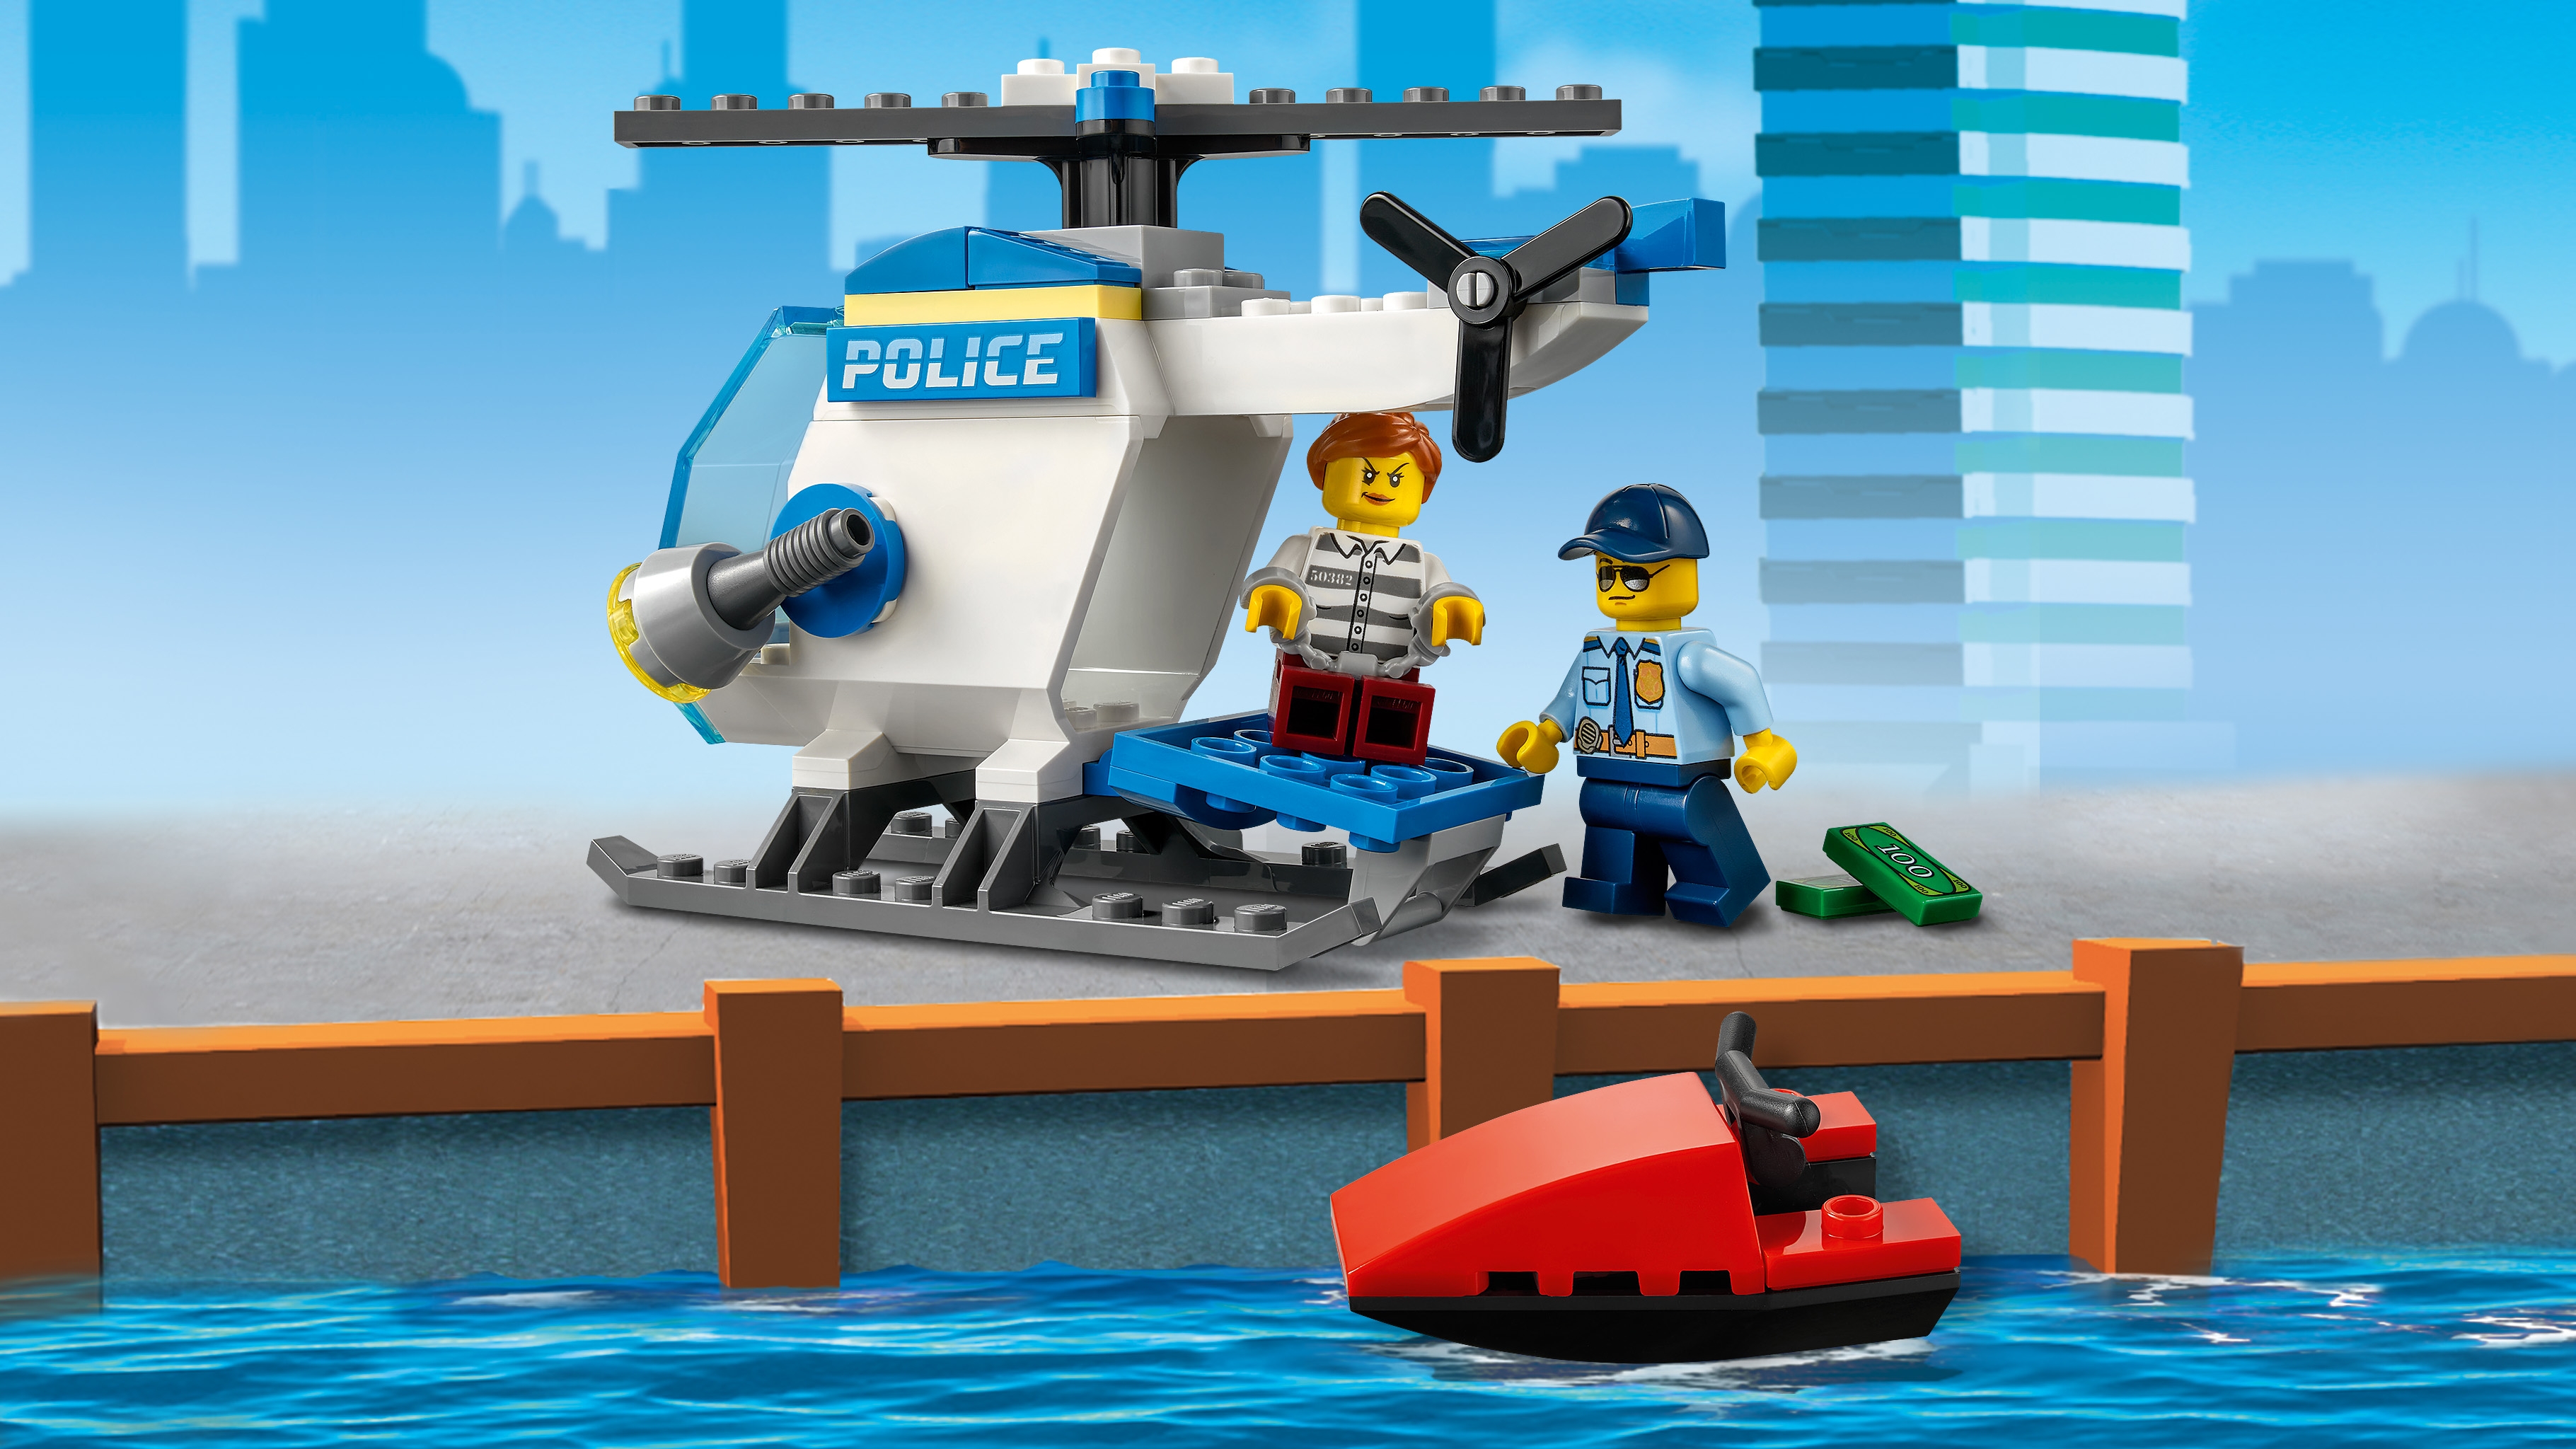 ポリスヘリコプター 60275 - レゴ®シティ セット - LEGO.comキッズ